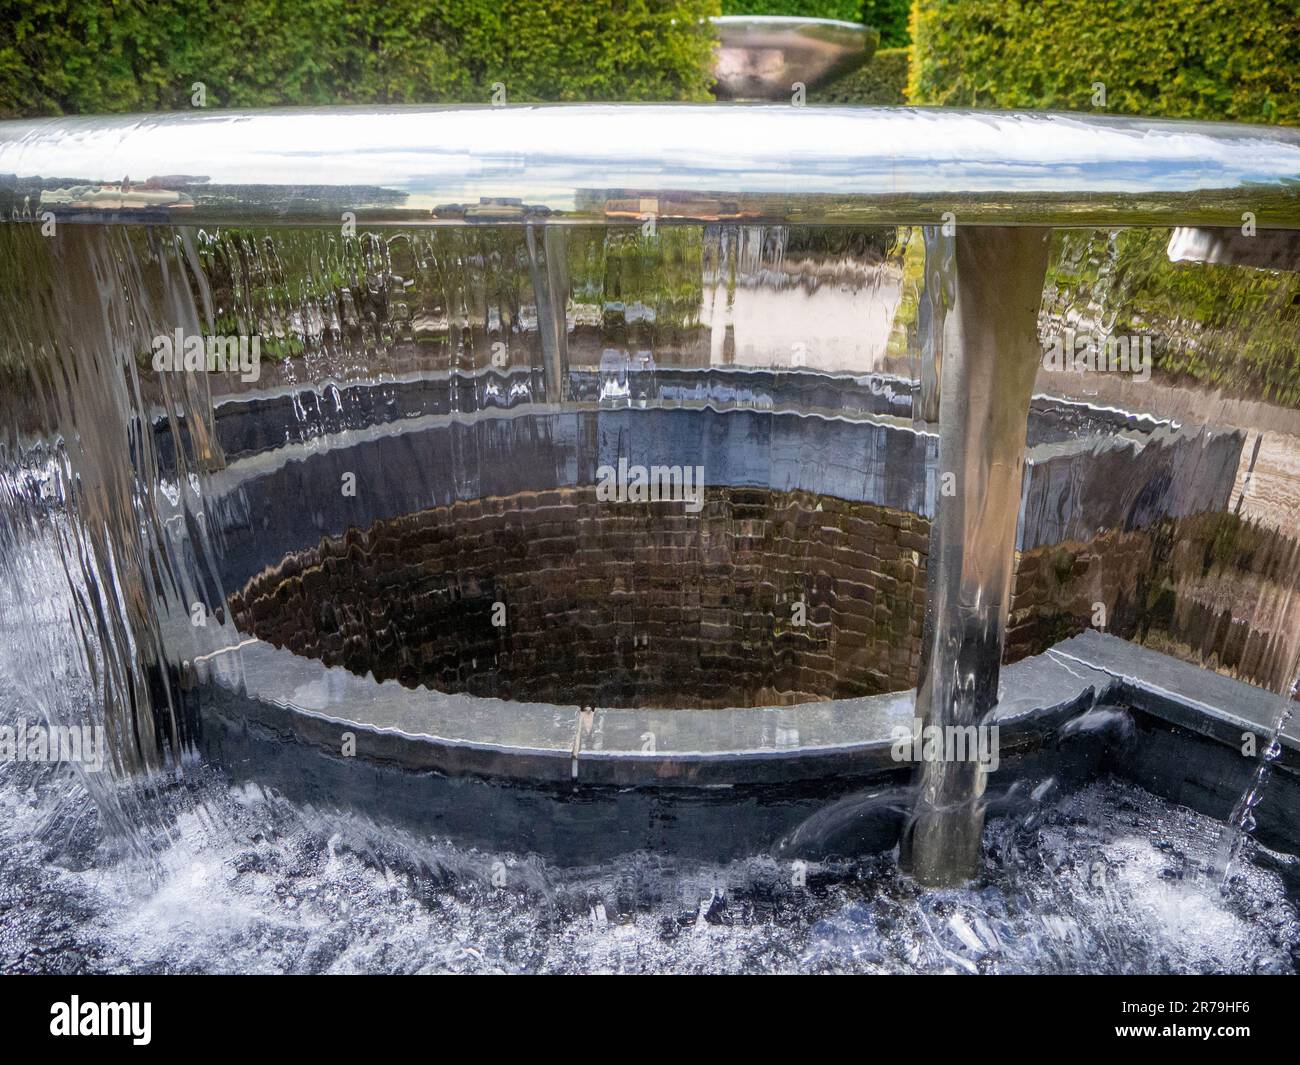 Une exposition spectaculaire de l'une des caractéristiques aquatiques interactives des jardins d'Alnwick, Alnwick, Northumberland, Royaume-Uni Banque D'Images